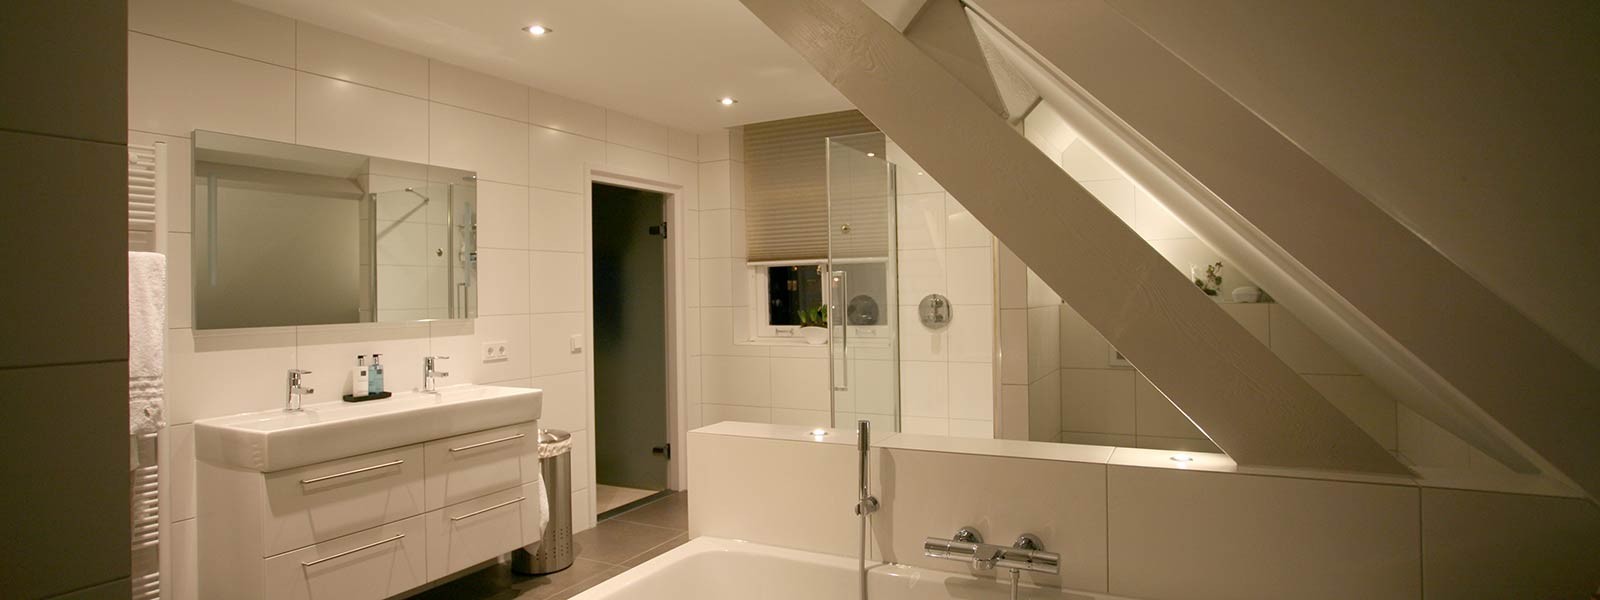 Lichtplan maken voor een badkamer (Hulp bij verlichting van SLV Nederland)